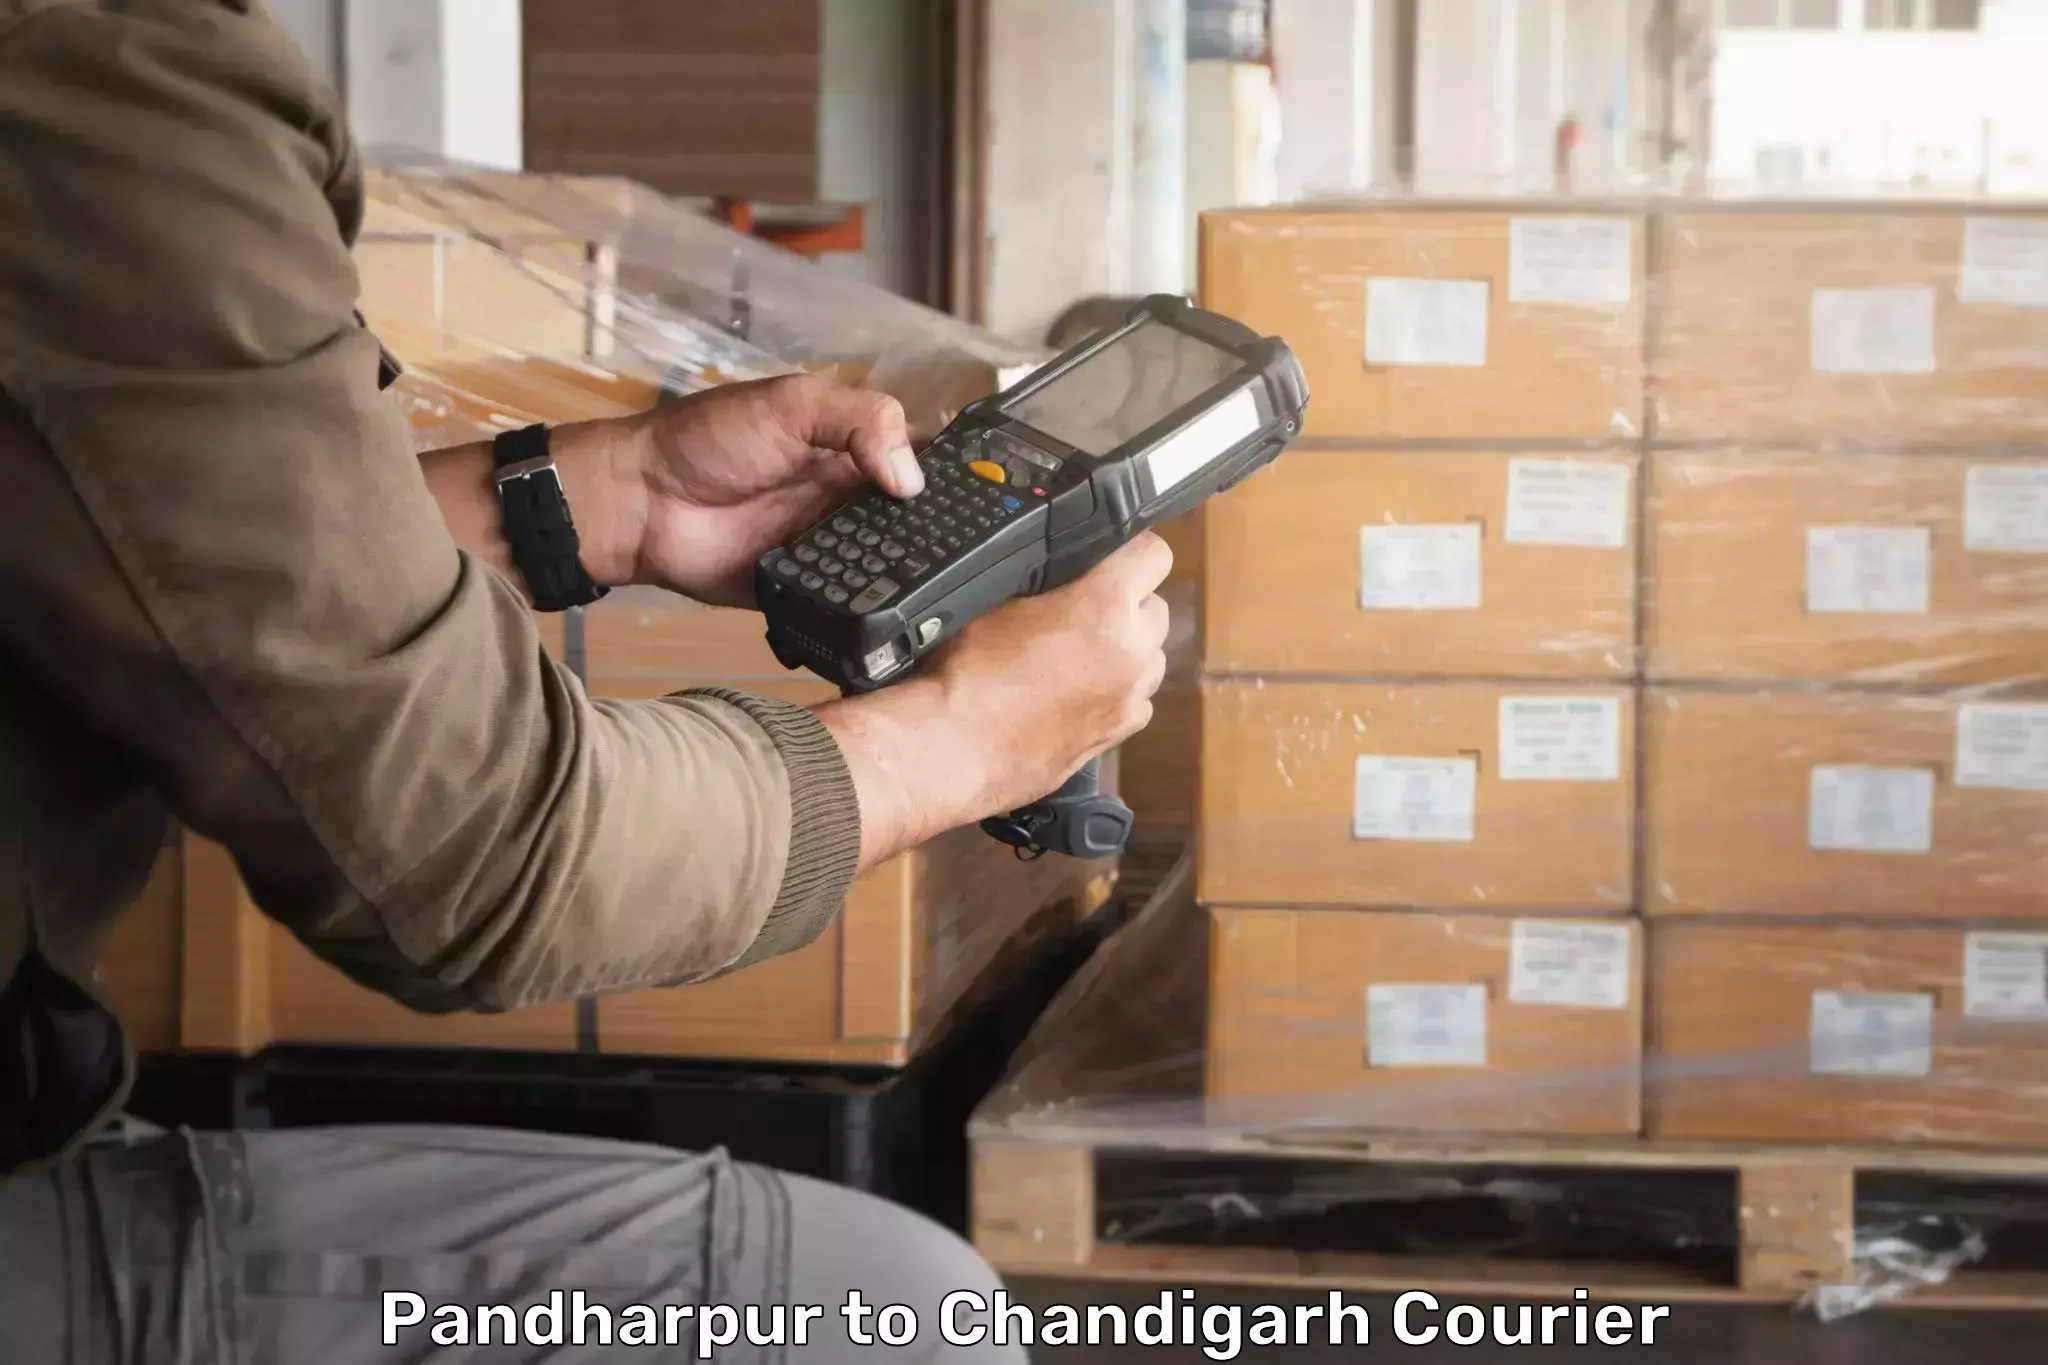 Ground shipping Pandharpur to Chandigarh